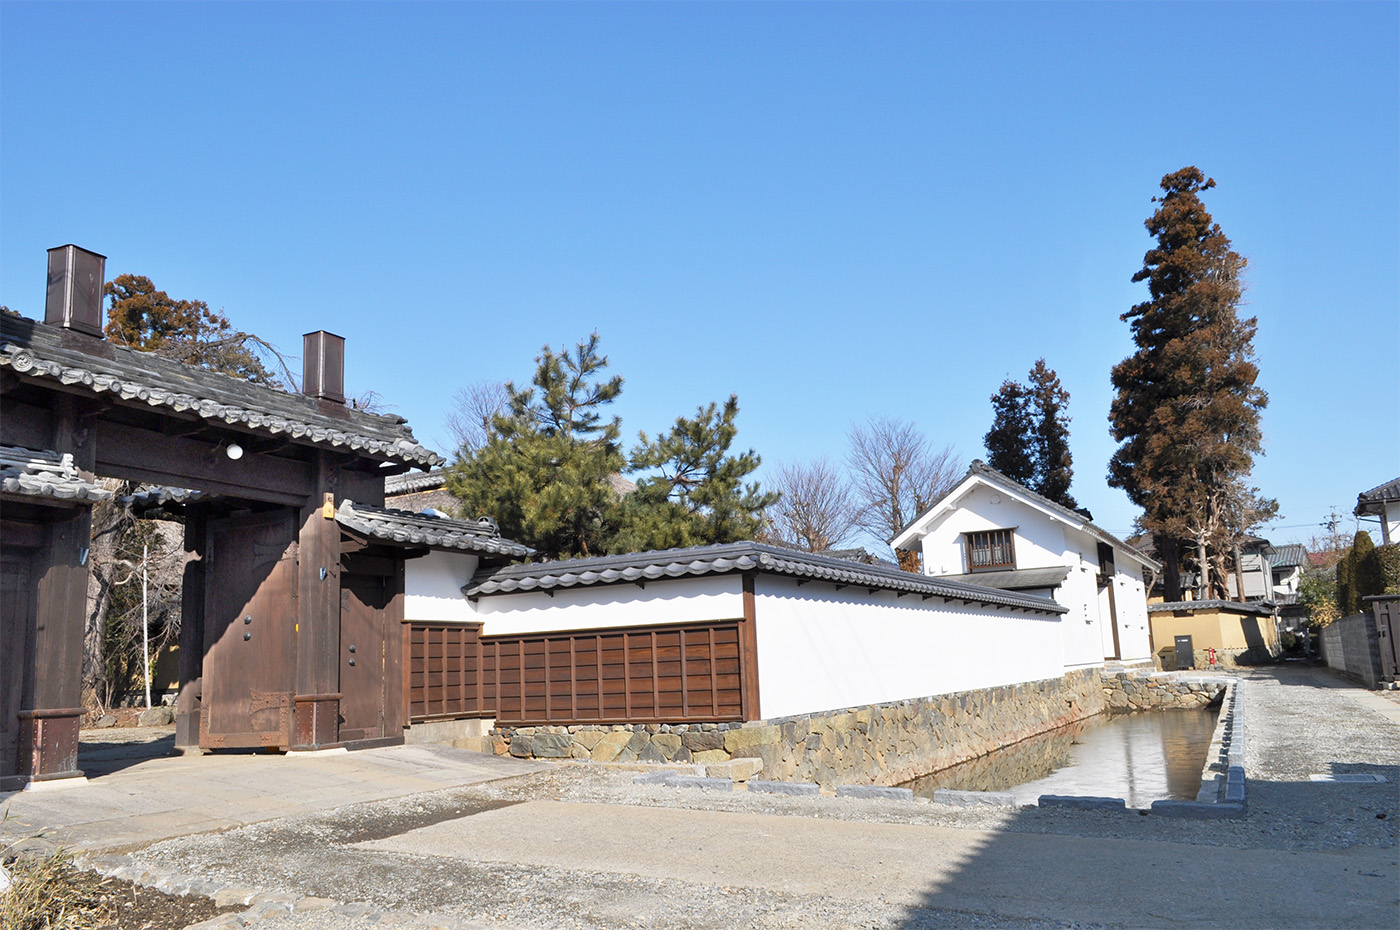 Takemizuwake Shrine Matsuda Residence Remains